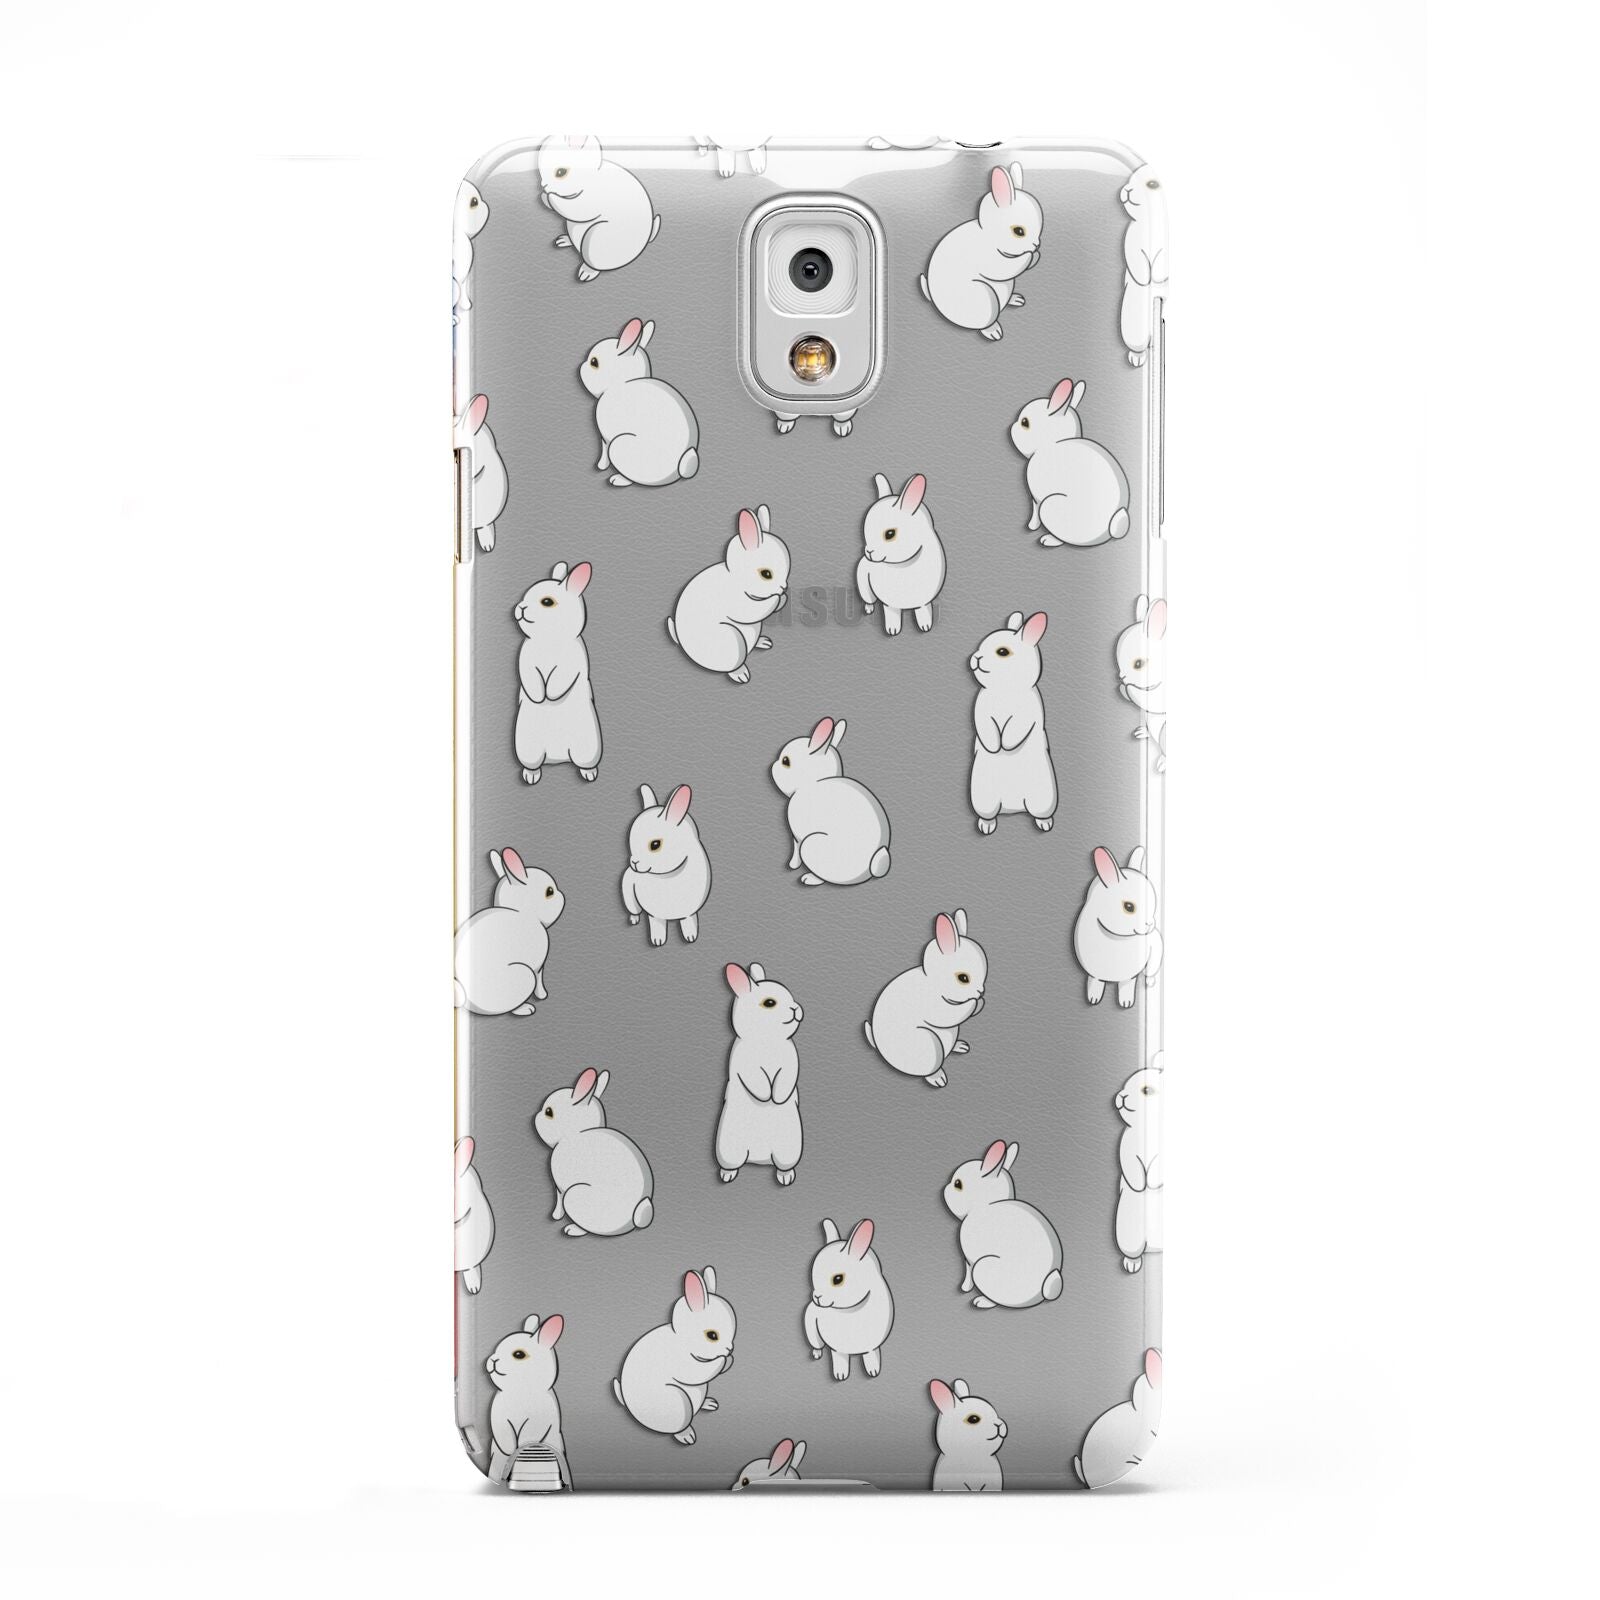 Bunny Rabbit Samsung Galaxy Note 3 Case